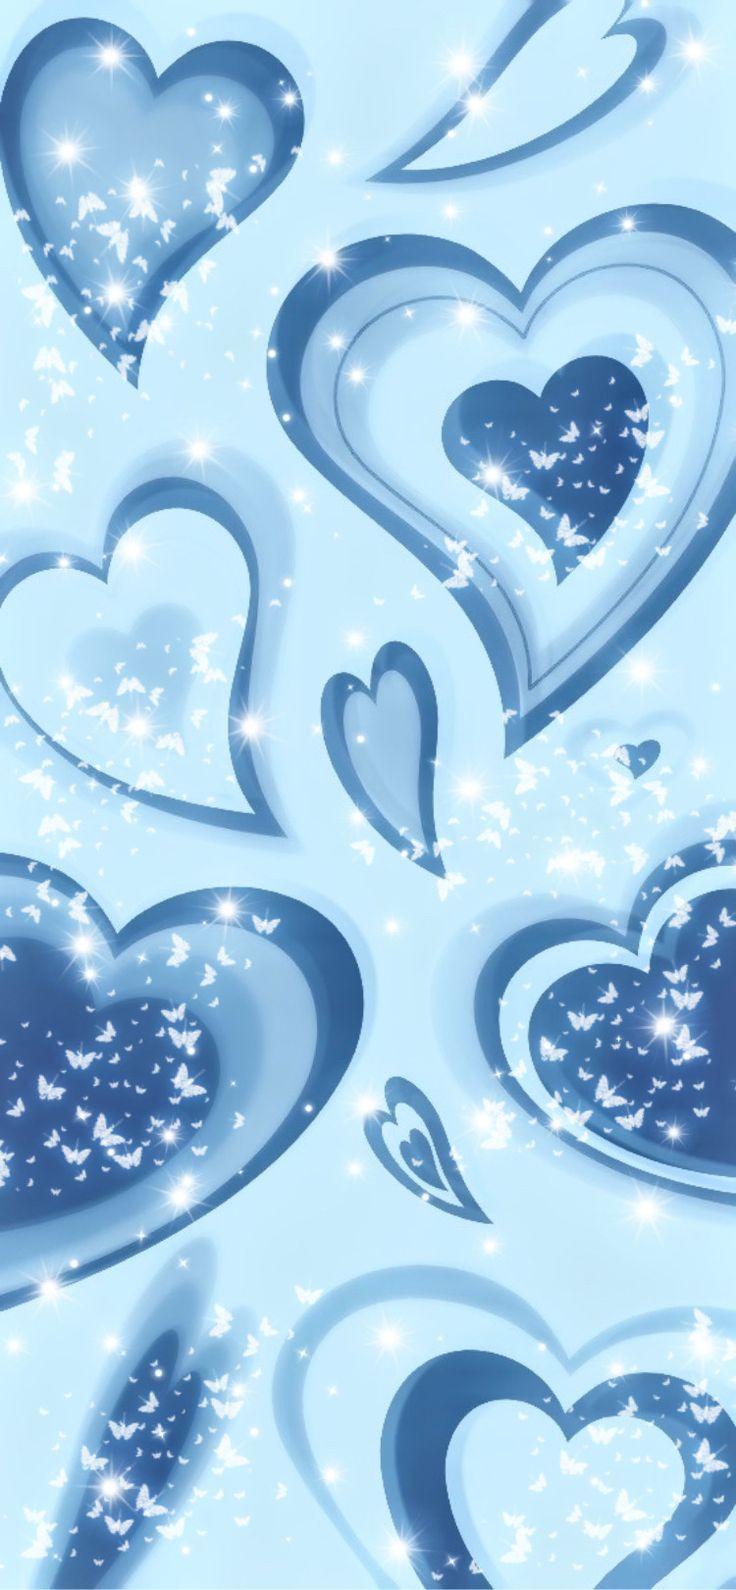 Light Blue Heart Wallpapers - Top Free Light Blue Heart Backgrounds ...